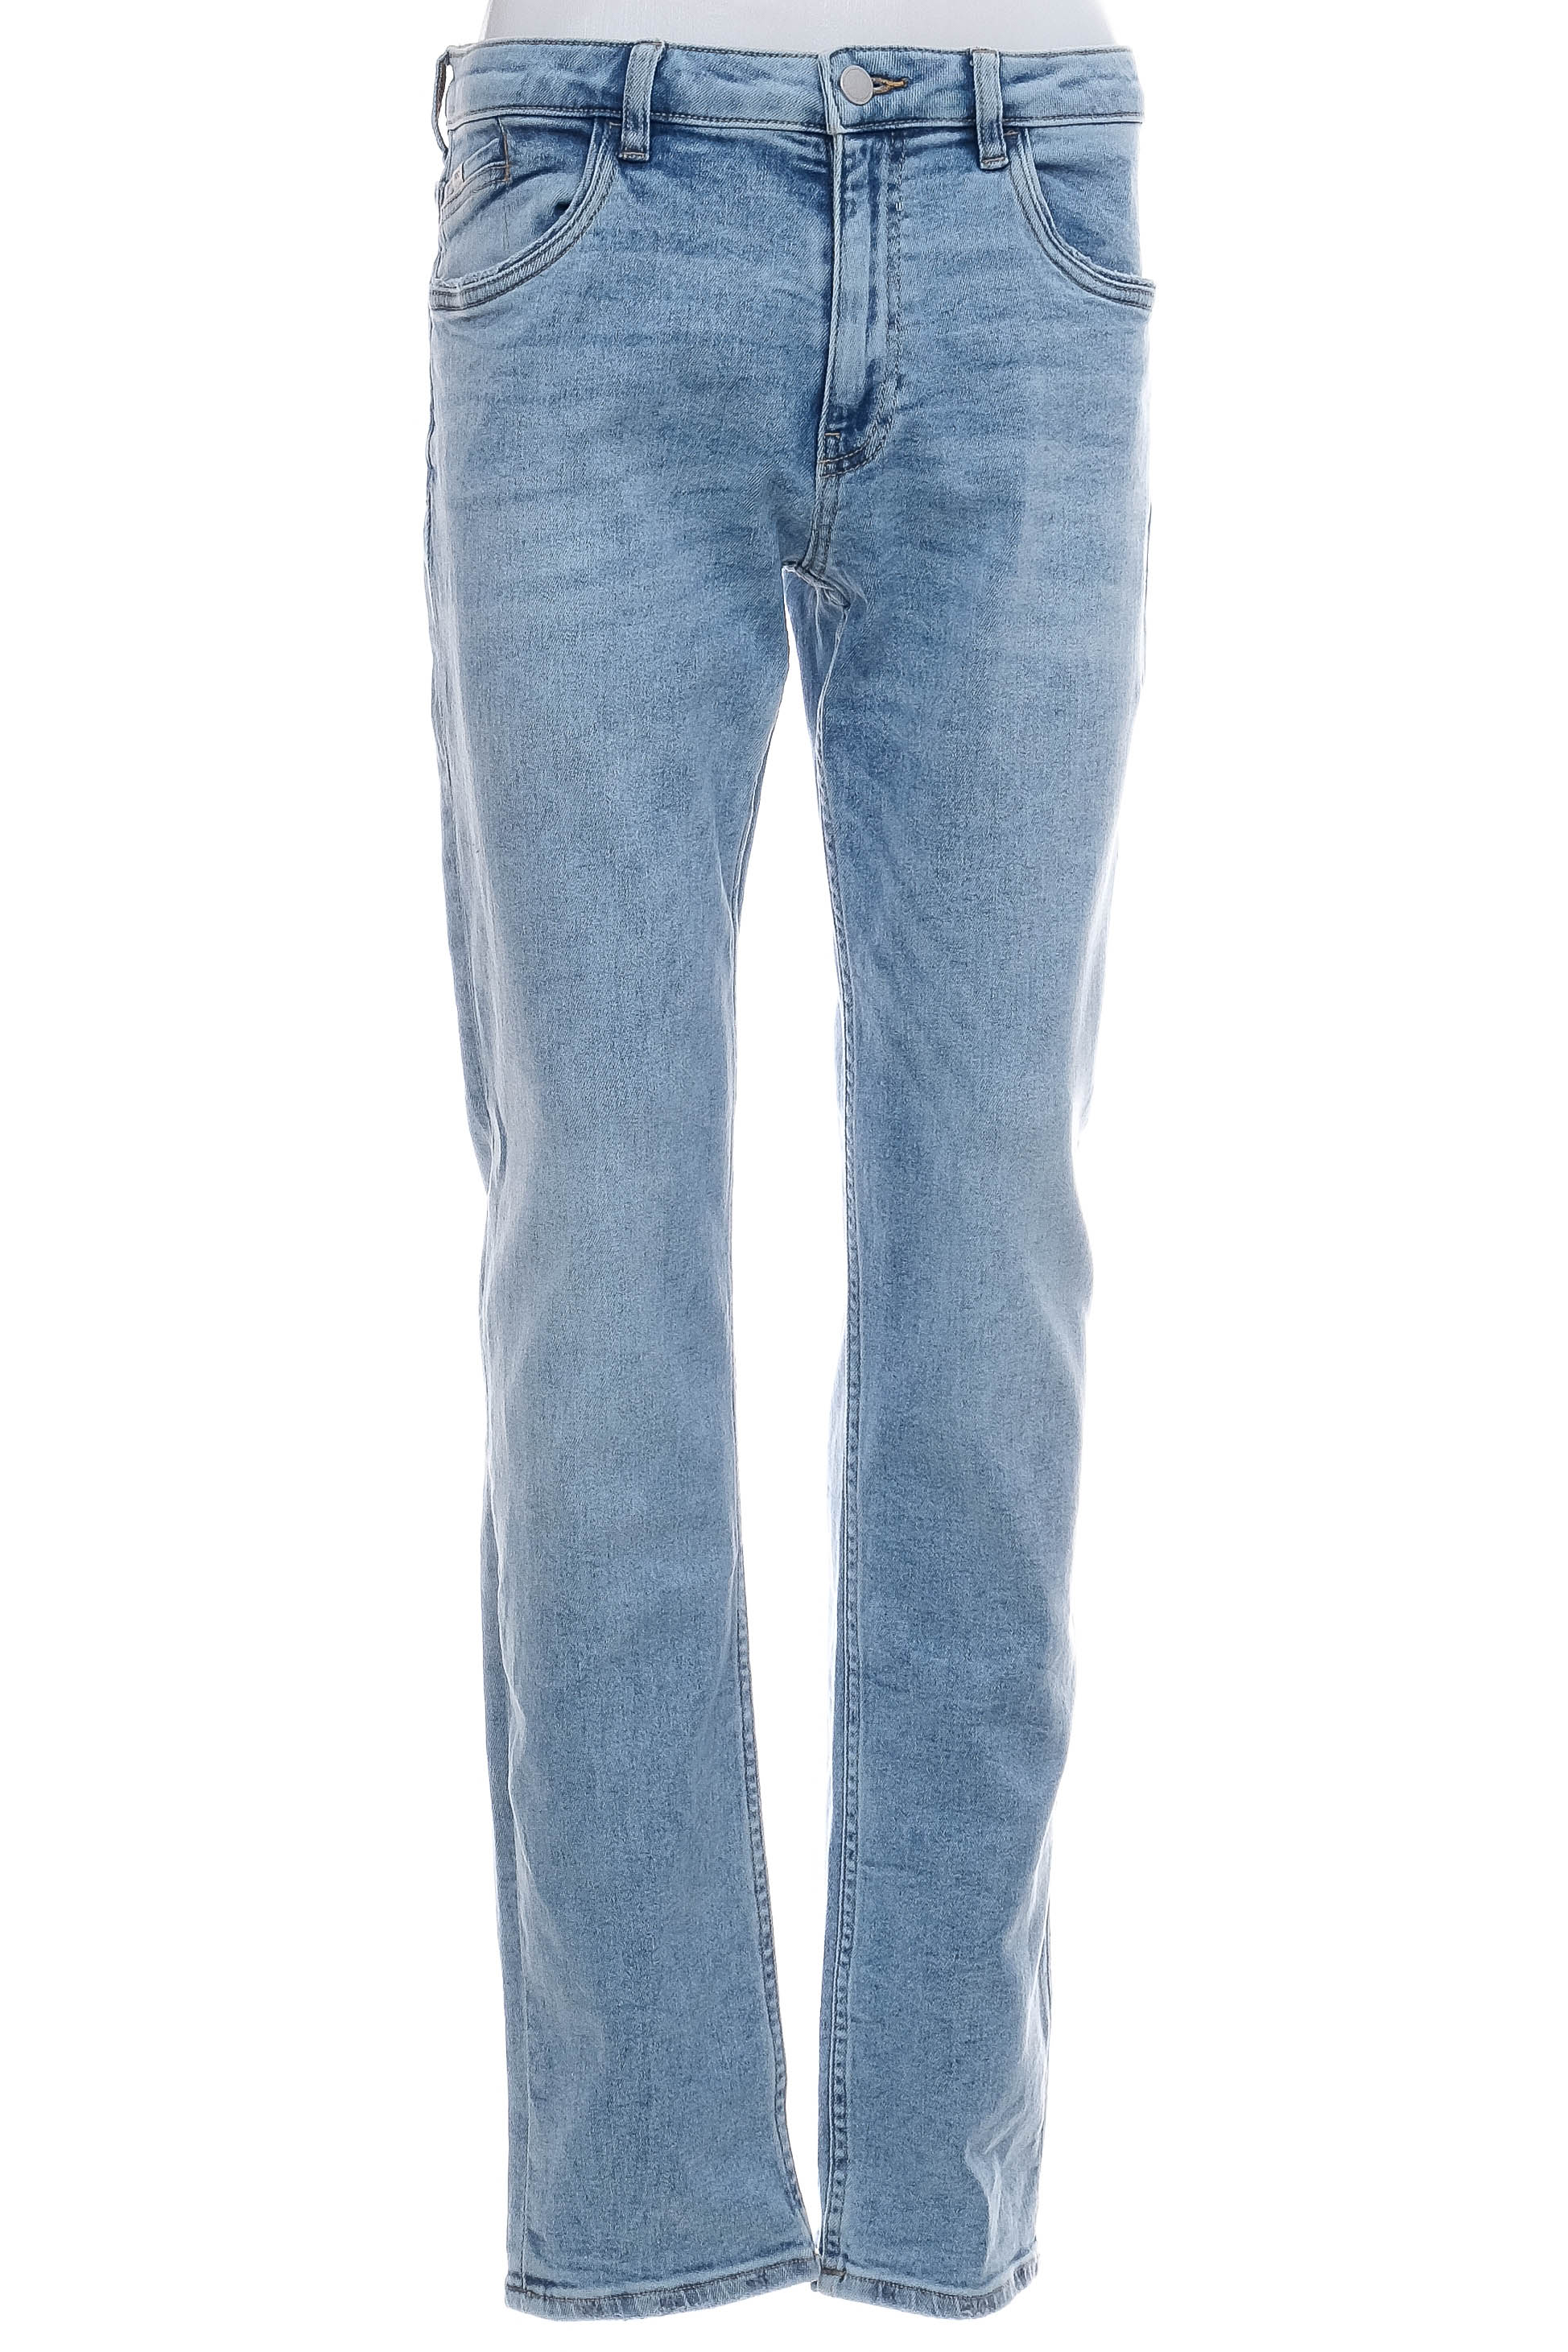 Men's jeans - ESPRIT - 0